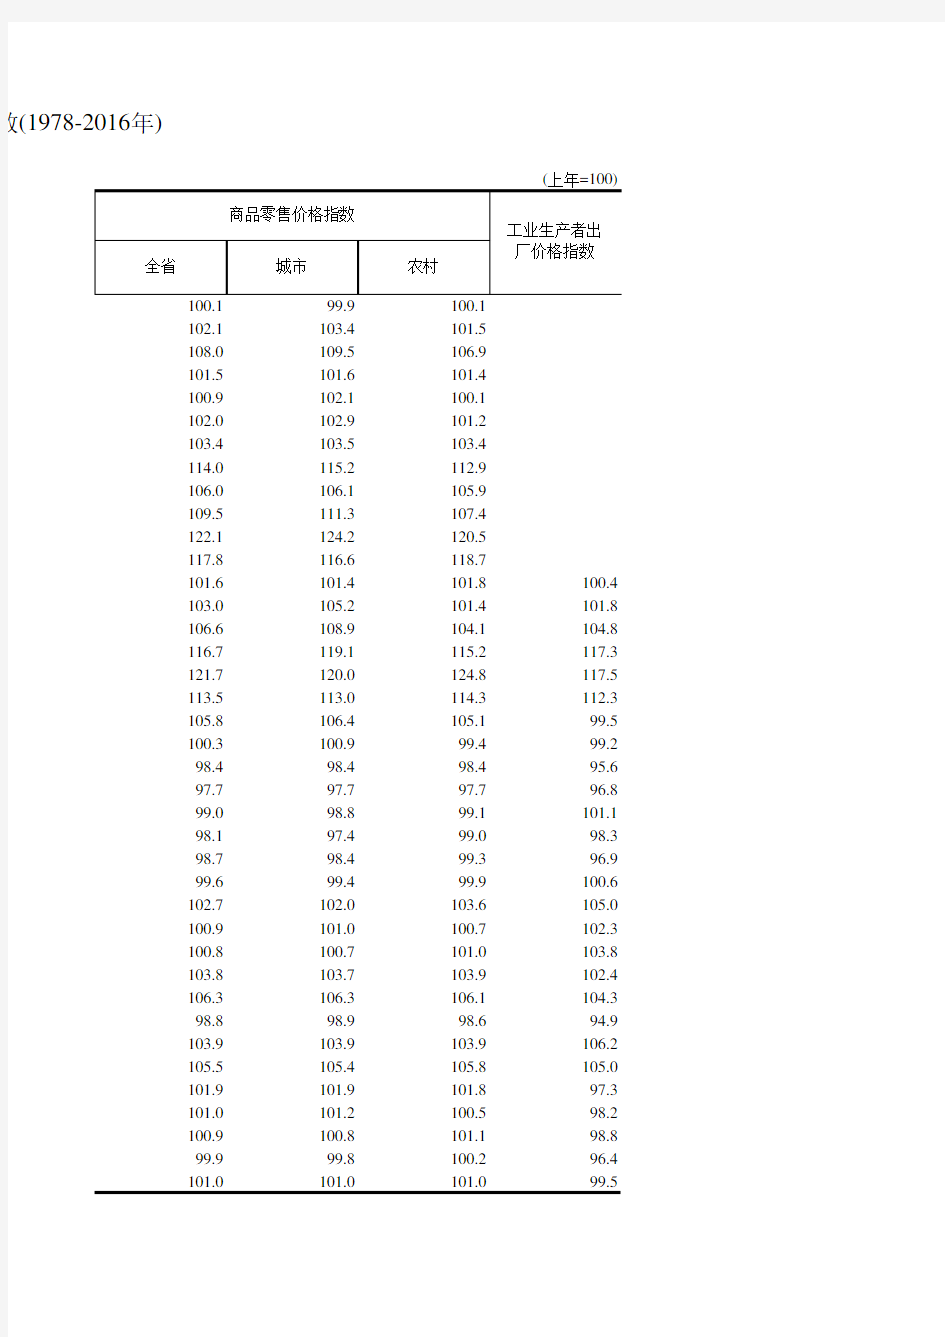 浙江统计年鉴2017社会经济发展指标：各种价格总指数(1978-2016年)